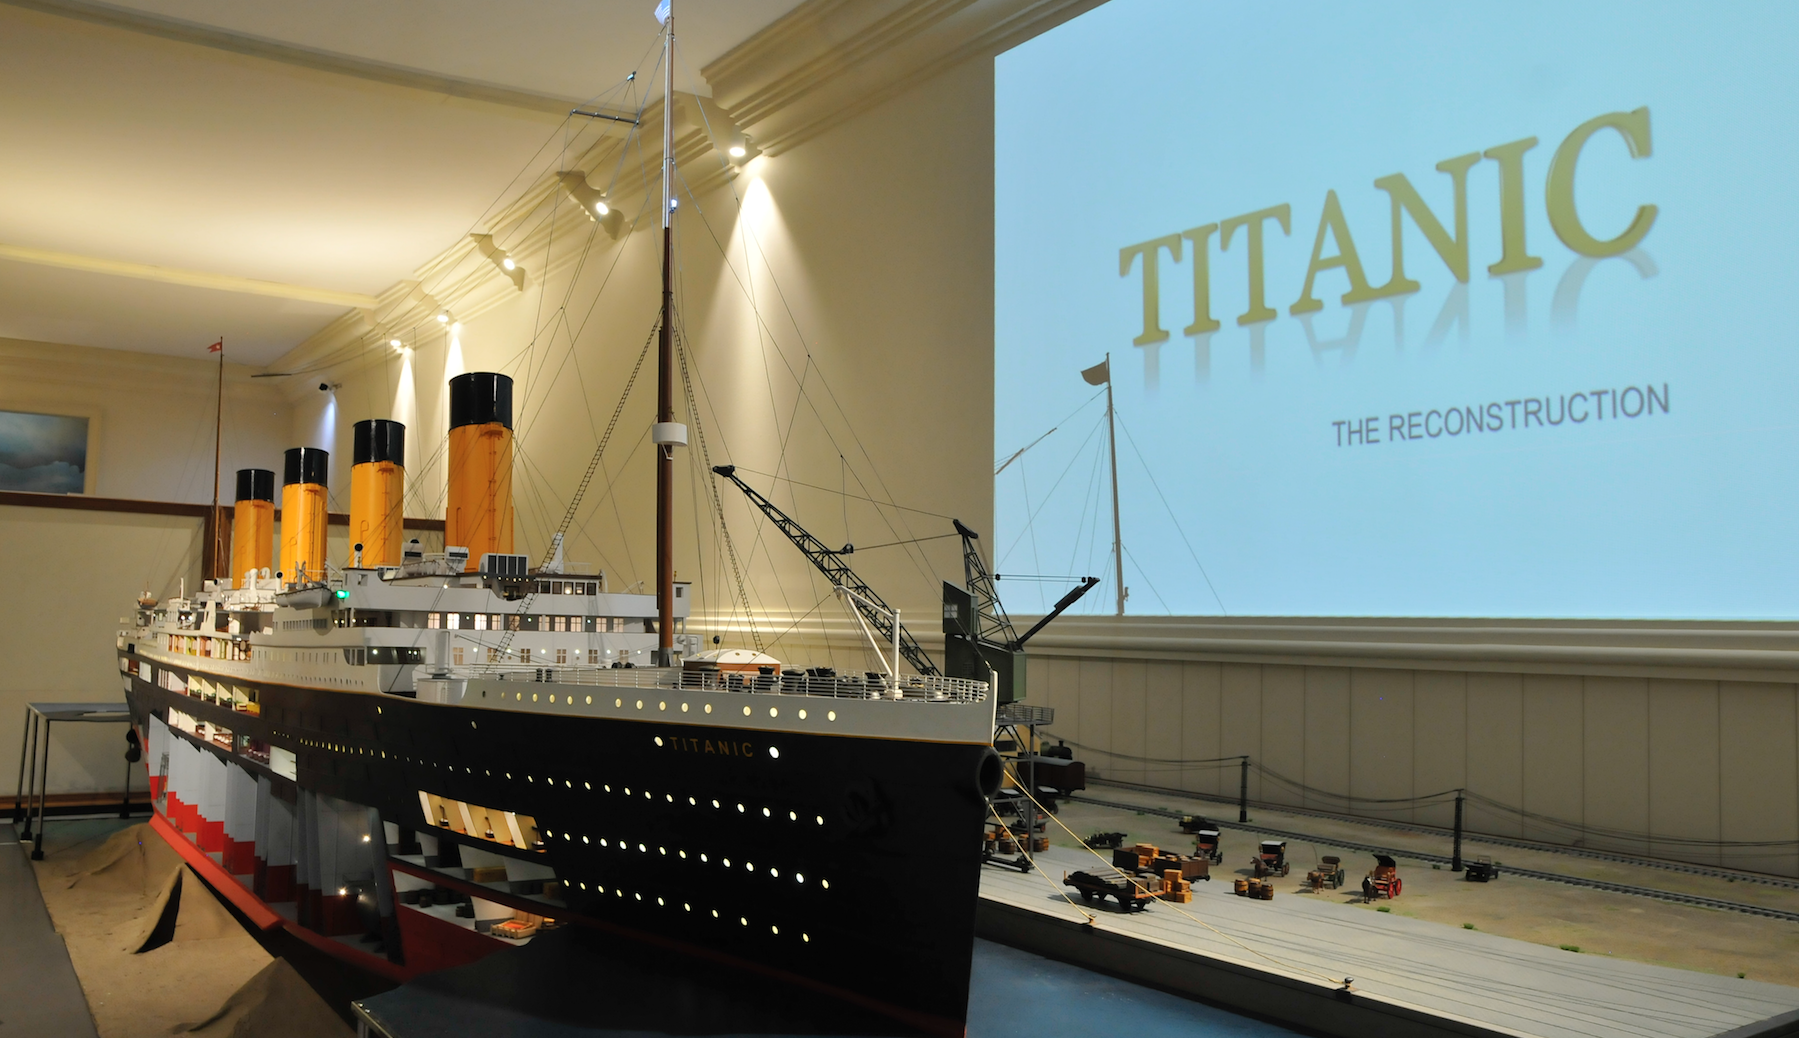 El Museu Marítim de Barcelona exposa “Titanic: the reconstruction”